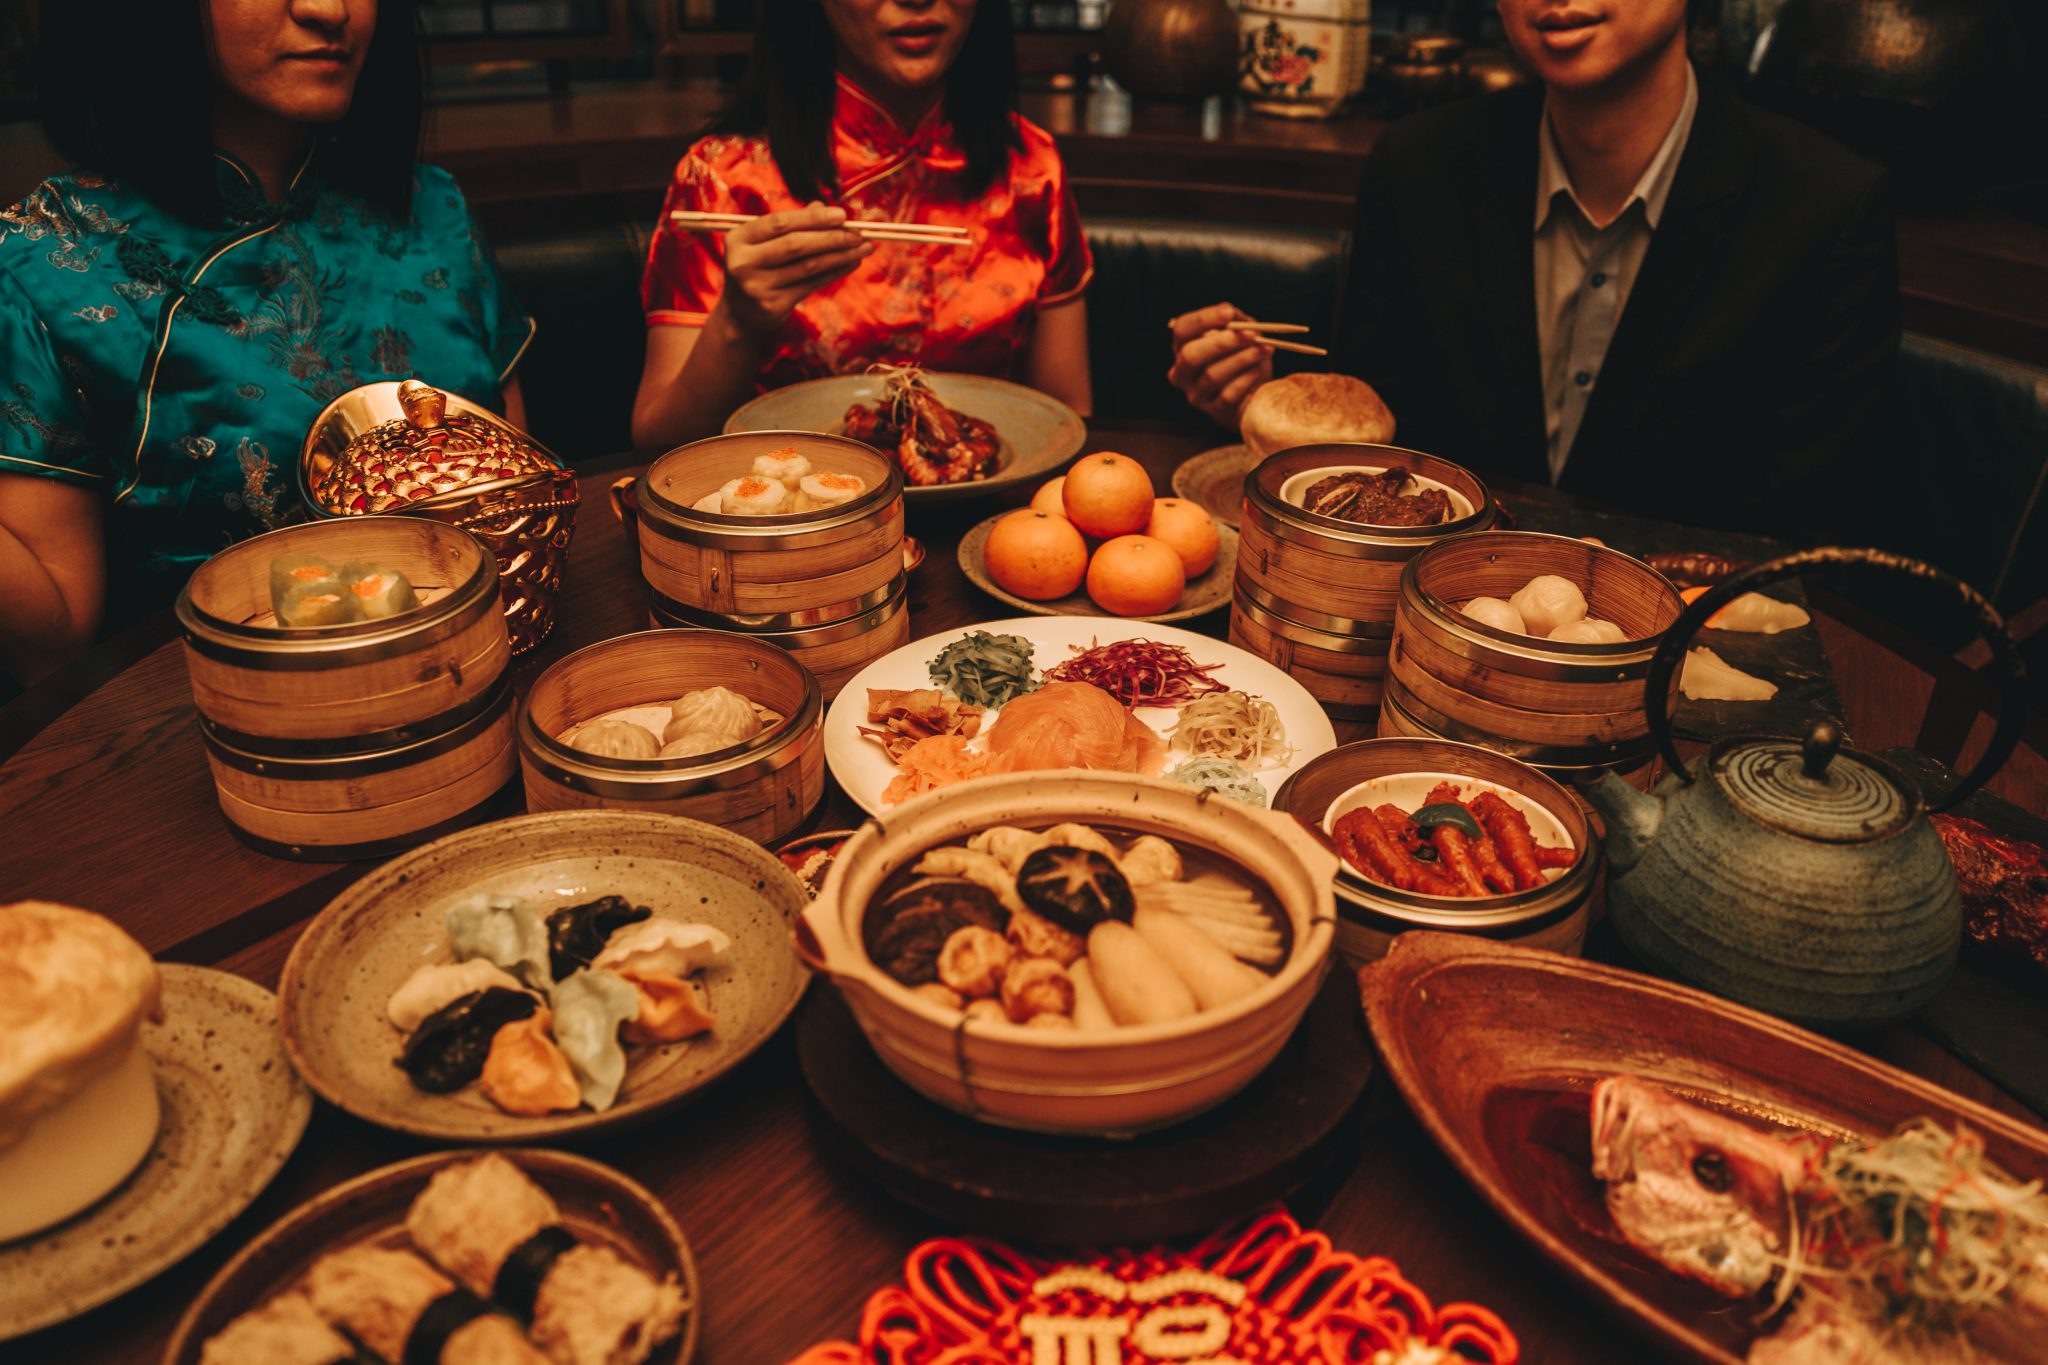 مطعم داي باي دونج أبوظبي يحتفل بعام الفأر الصيني الجديد ...